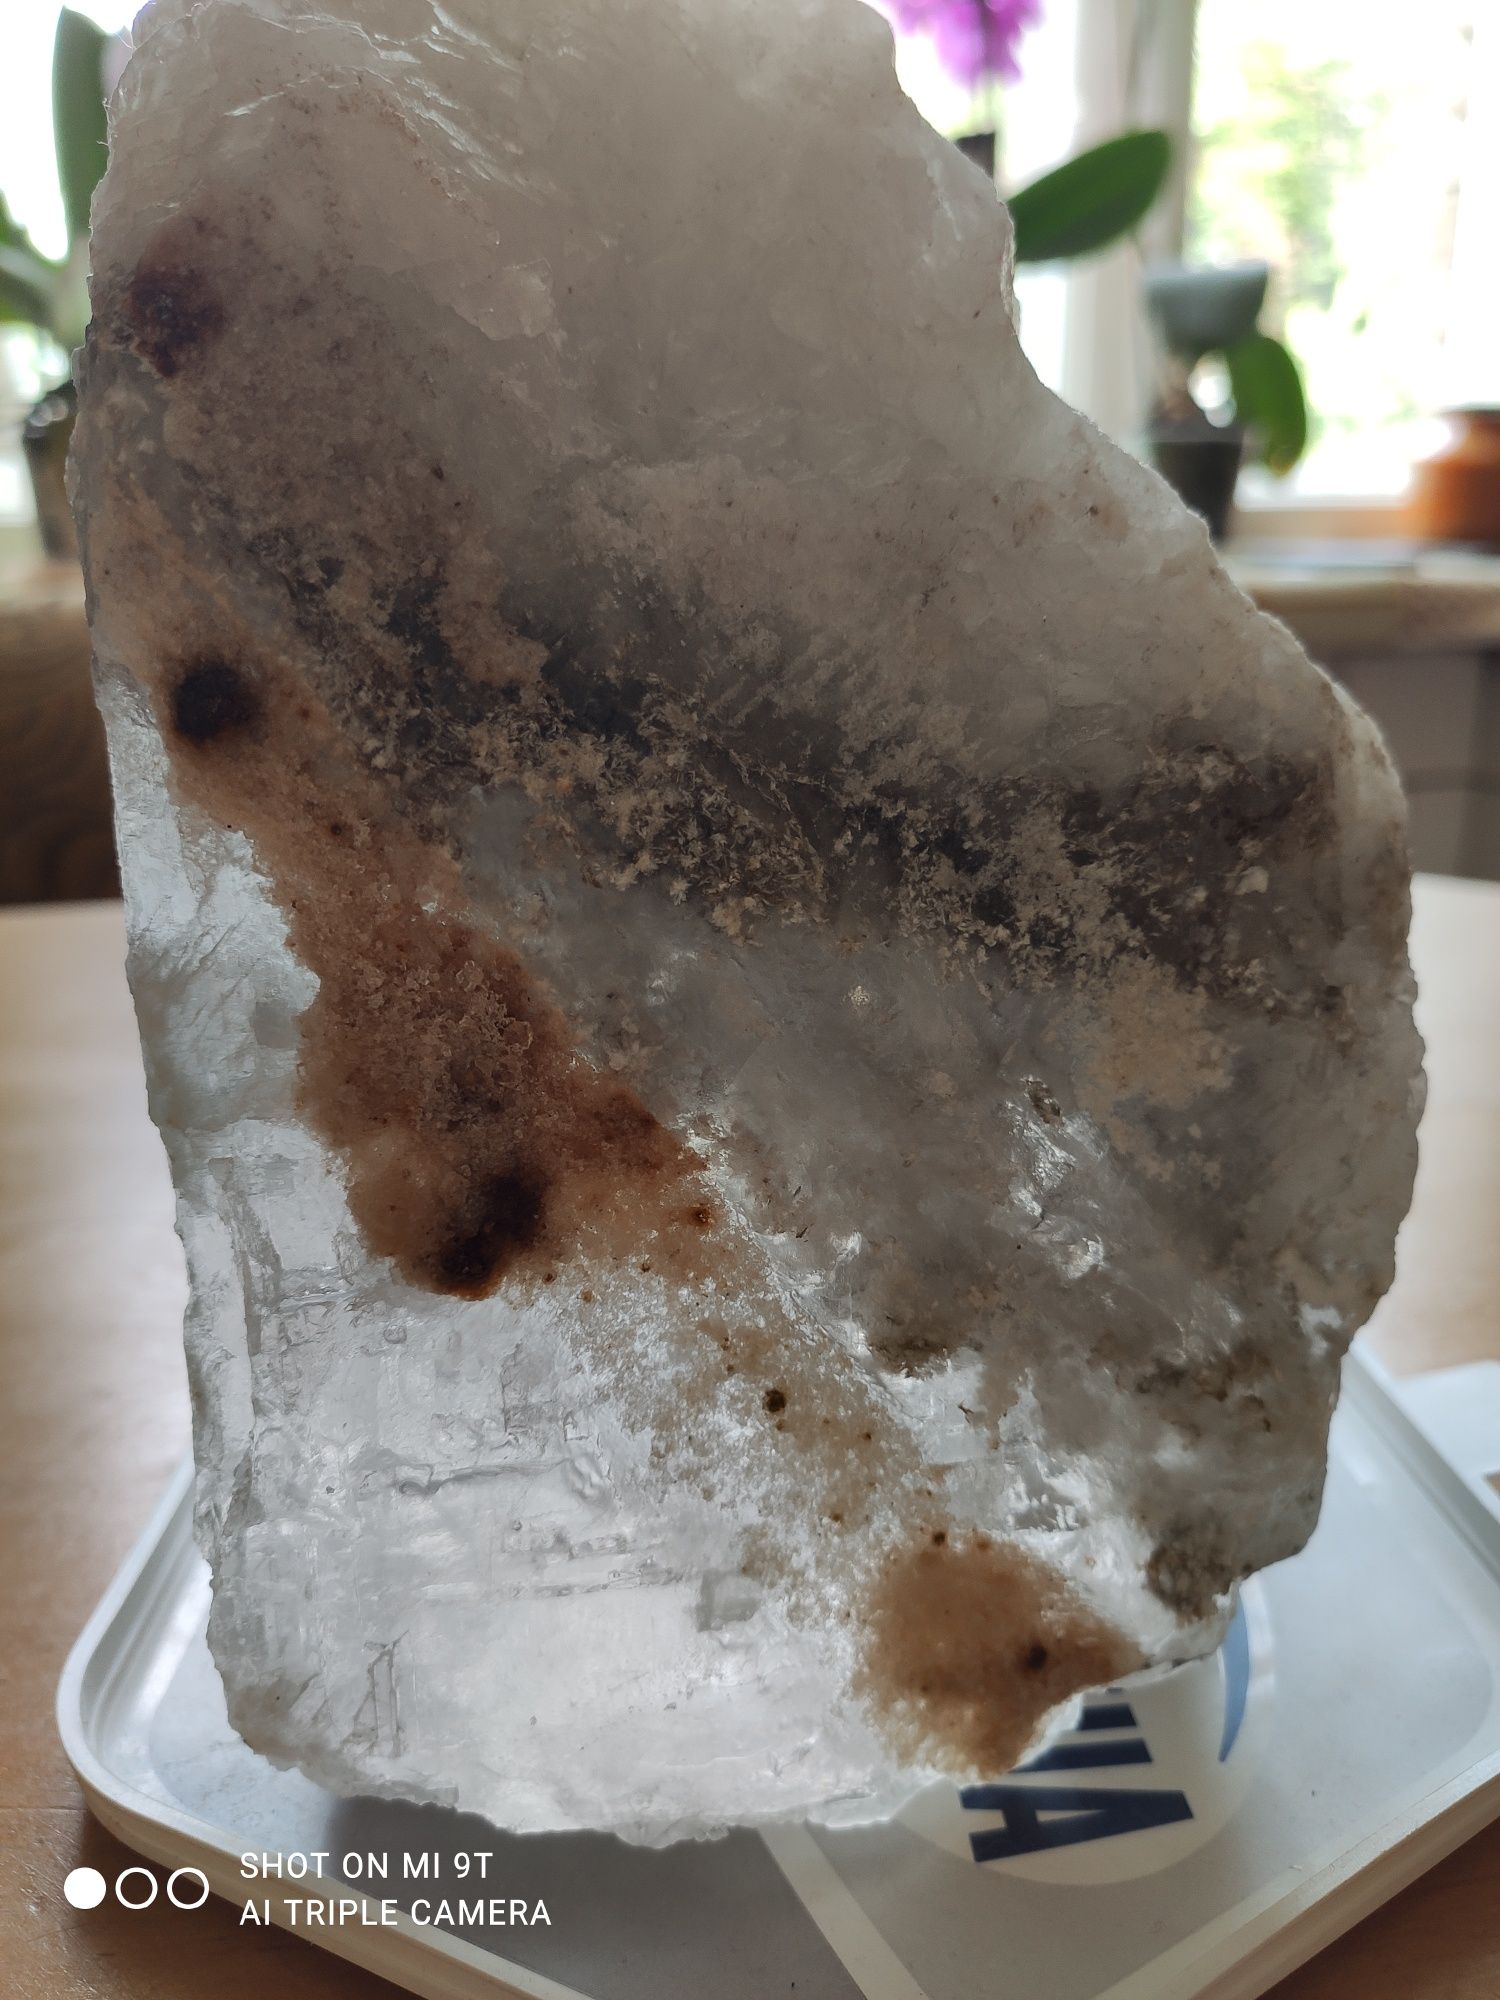 Кристал солі  великого розміру